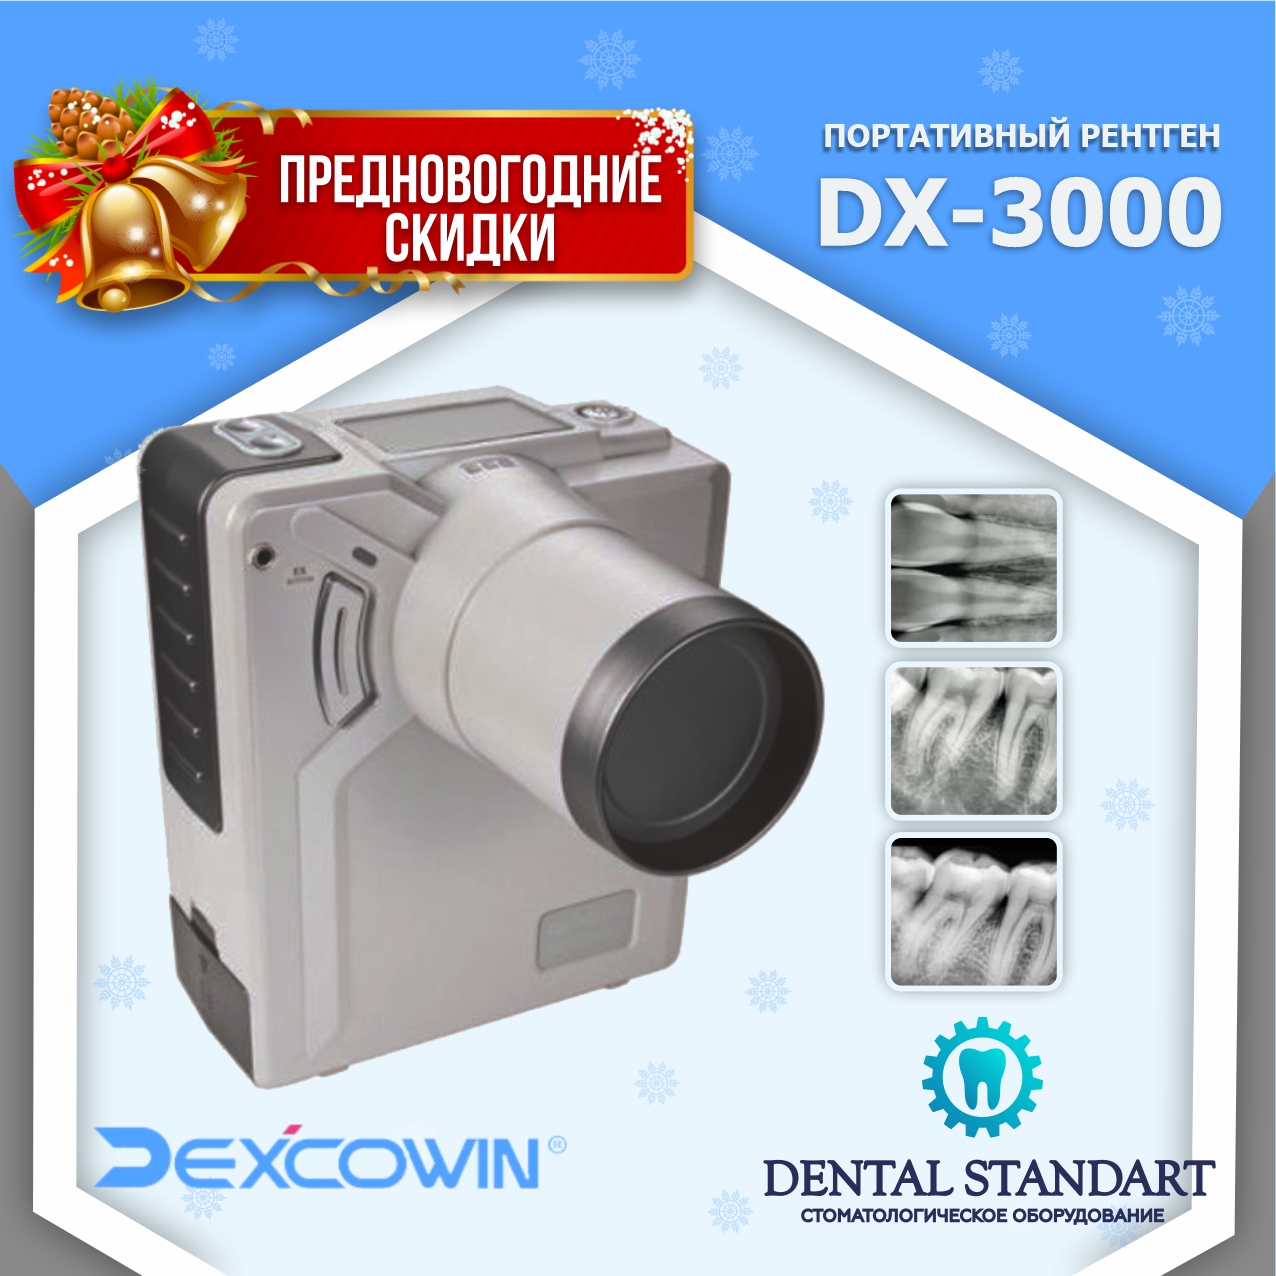 DX-3000 - высокочастотный портативный рентген-аппарат